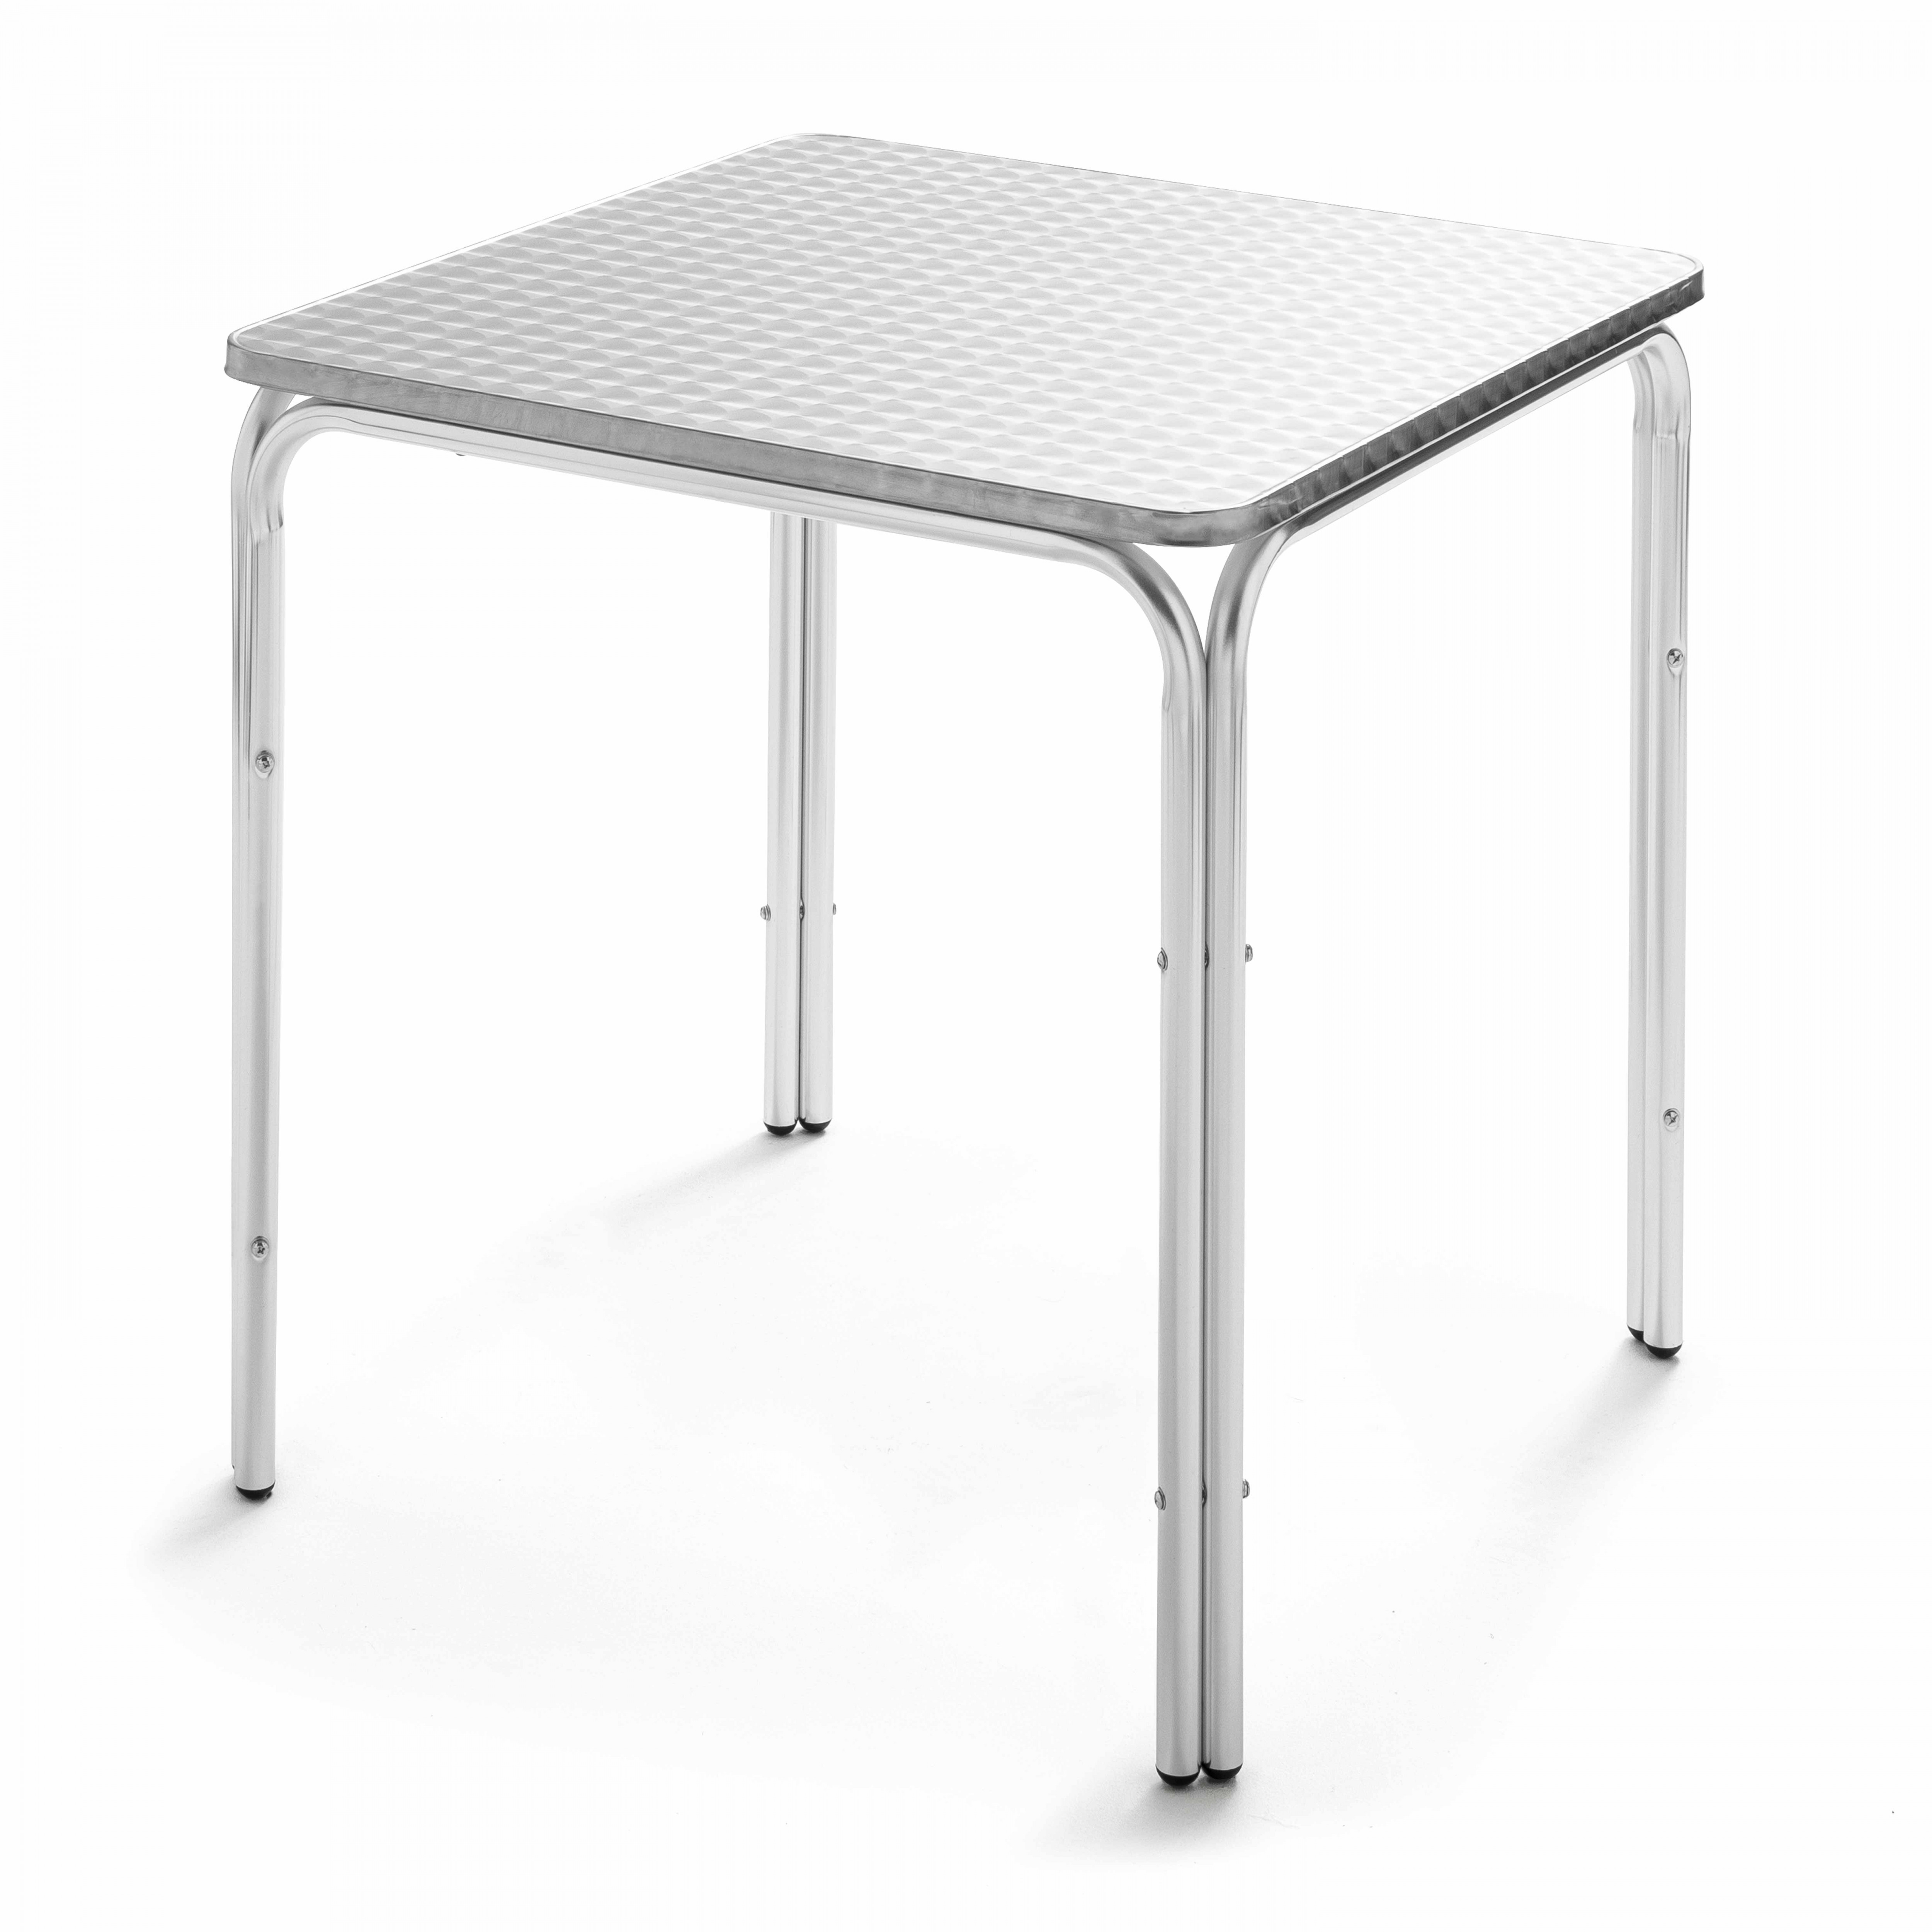 Table de jardin carrée en aluminium (70 cm x 70 cm x 72 cm)